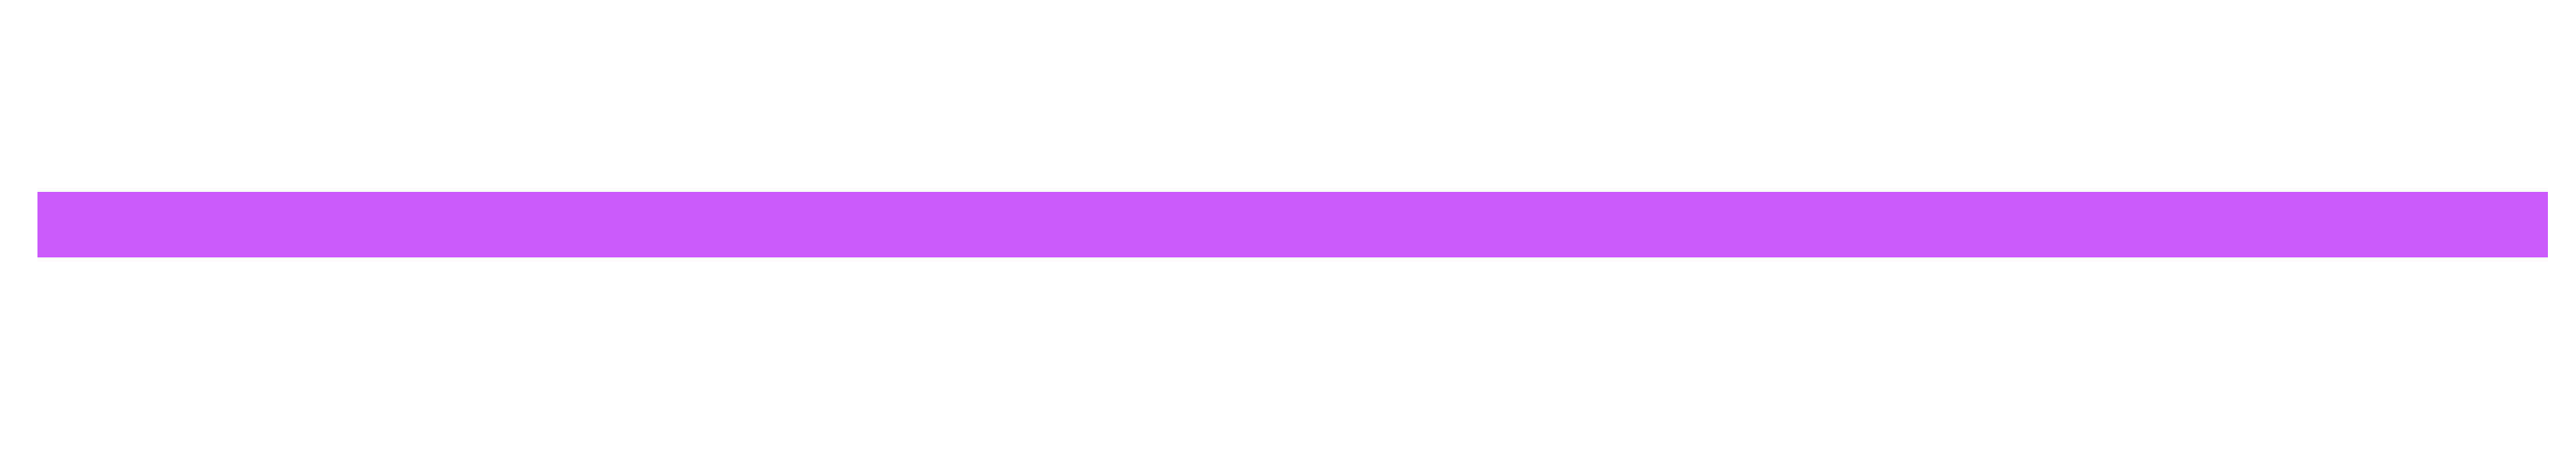 Фиолетовая полоска. Фиолетовая полоска на прозрачном фоне. Полоска фиолетовая полукруг. Бегающая полоска фиолетовым. Горизонтально удлиненный